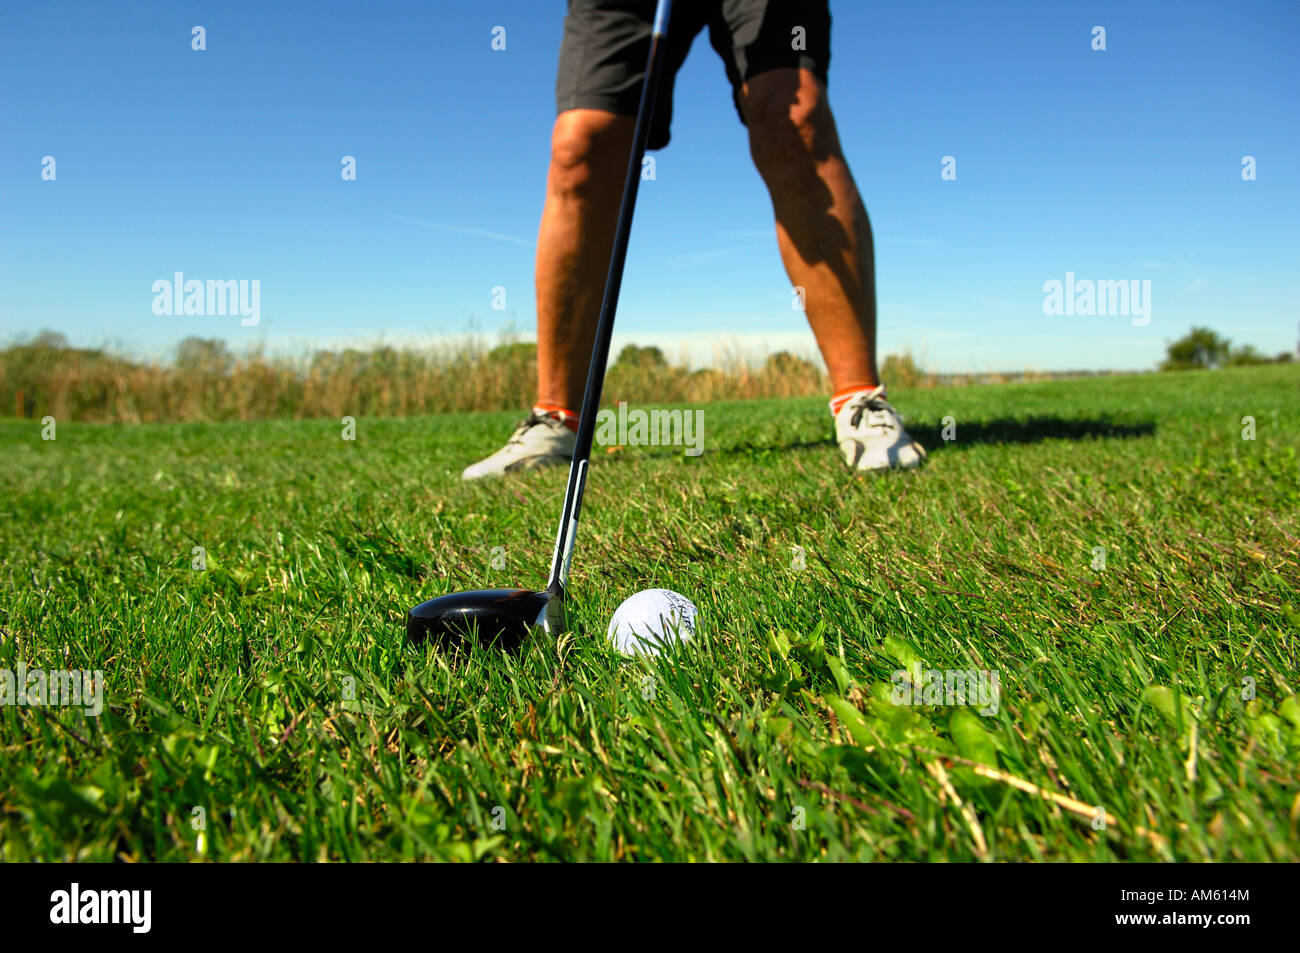 Un Golferduring a frappé à l'allée, terrain de golf, Caorle, Vénétie, Italie Banque D'Images